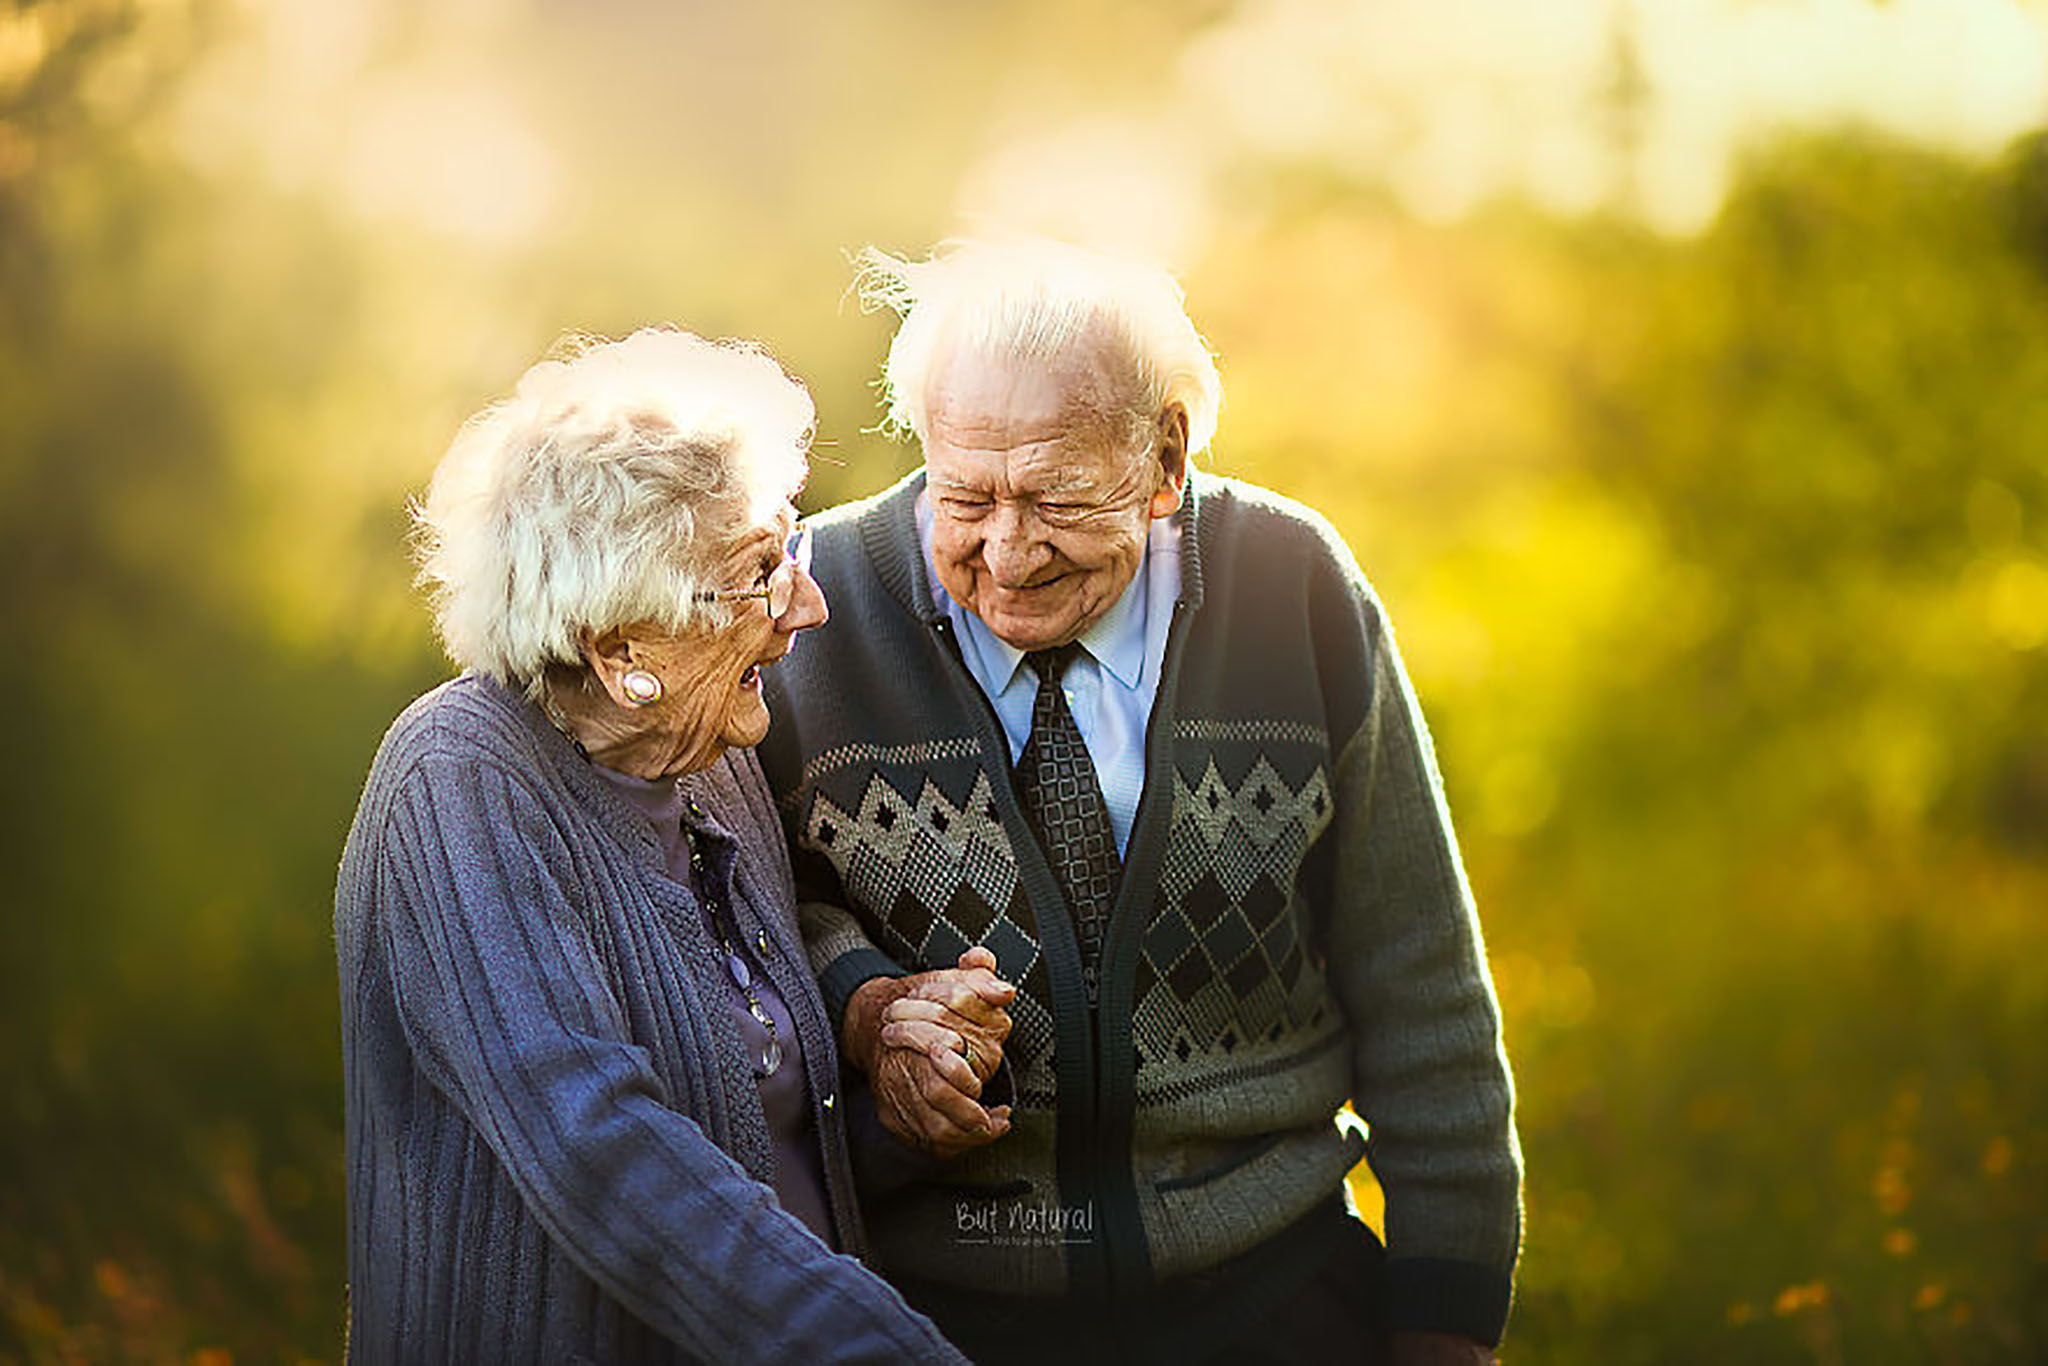 Cặp đôi già luôn là một món quà tuyệt vời trong cuộc sống. Họ không chỉ chia sẻ cùng nhau những khoảnh khắc đẹp trong cuộc sống mà còn là tấm gương sáng về tình yêu và sự cam kết lâu dài. Hãy chiêm ngưỡng những hình ảnh của cặp đôi già, và hưởng thụ niềm đam mê và tình cảm của họ.